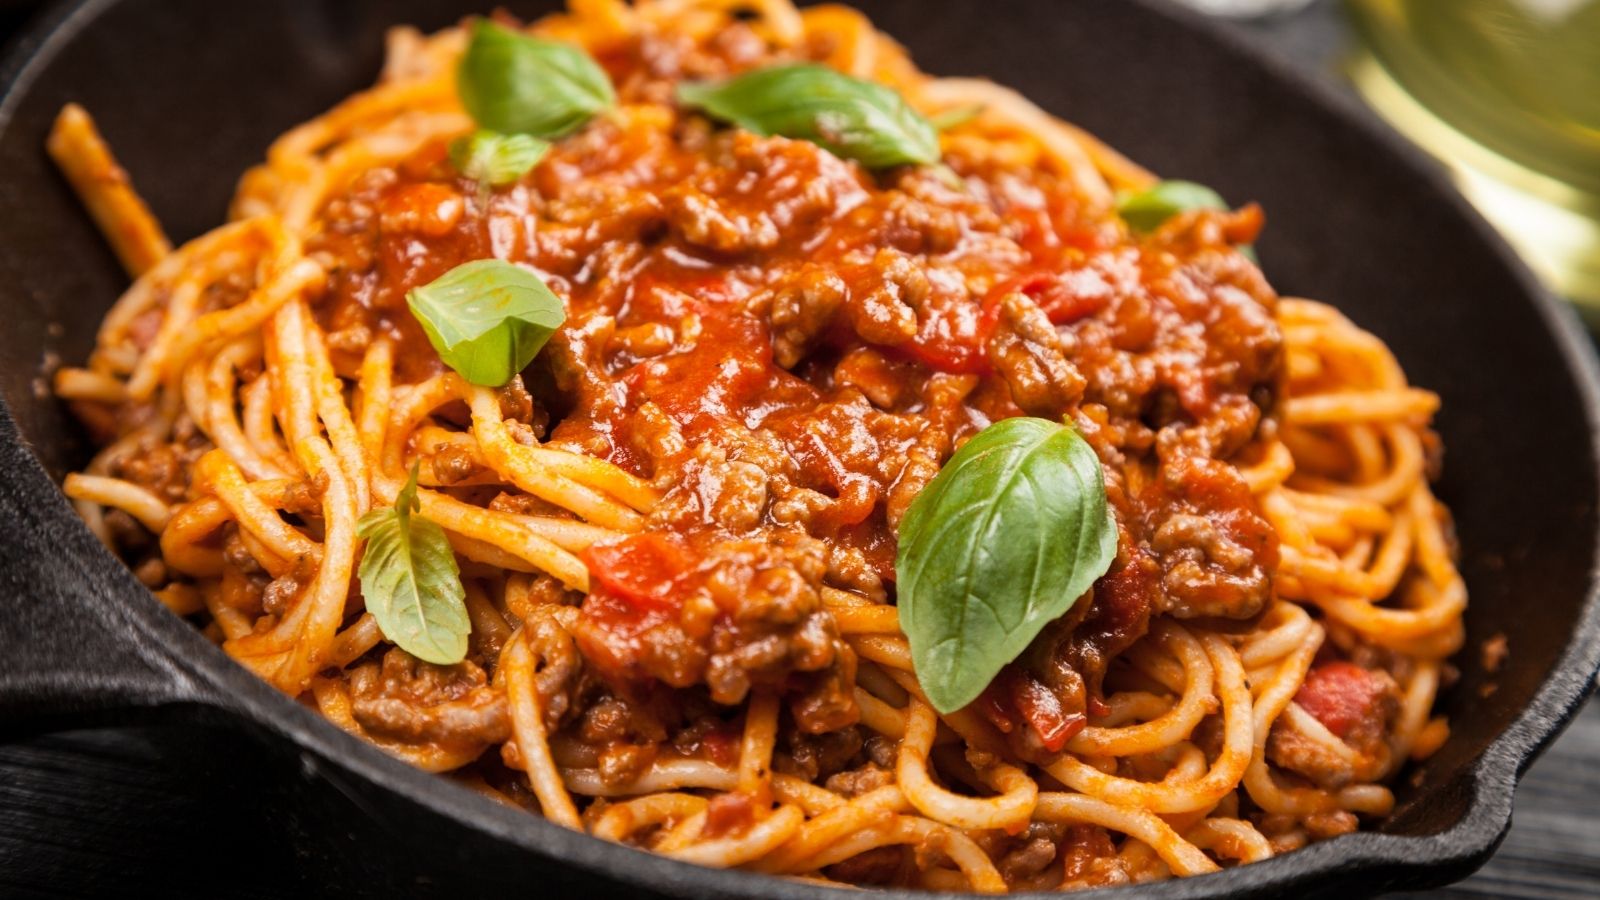 Quick and easy spaghetti bolognese recipe